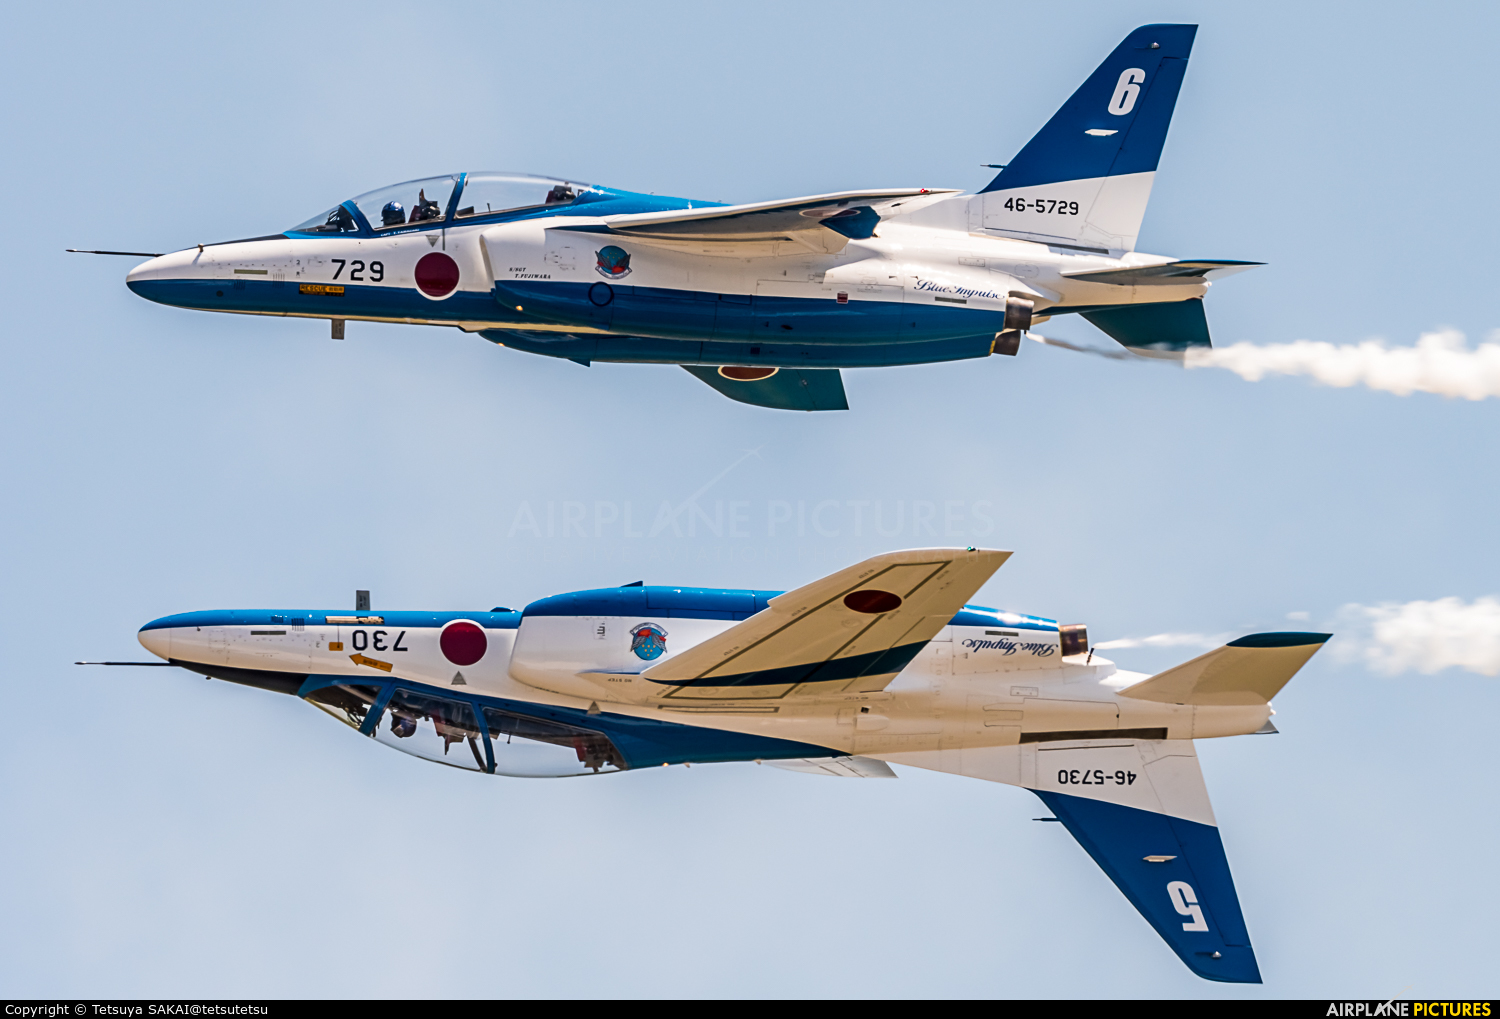 Japan - ASDF: Blue Impulse 46-5729 aircraft at Yonago - Miho AB